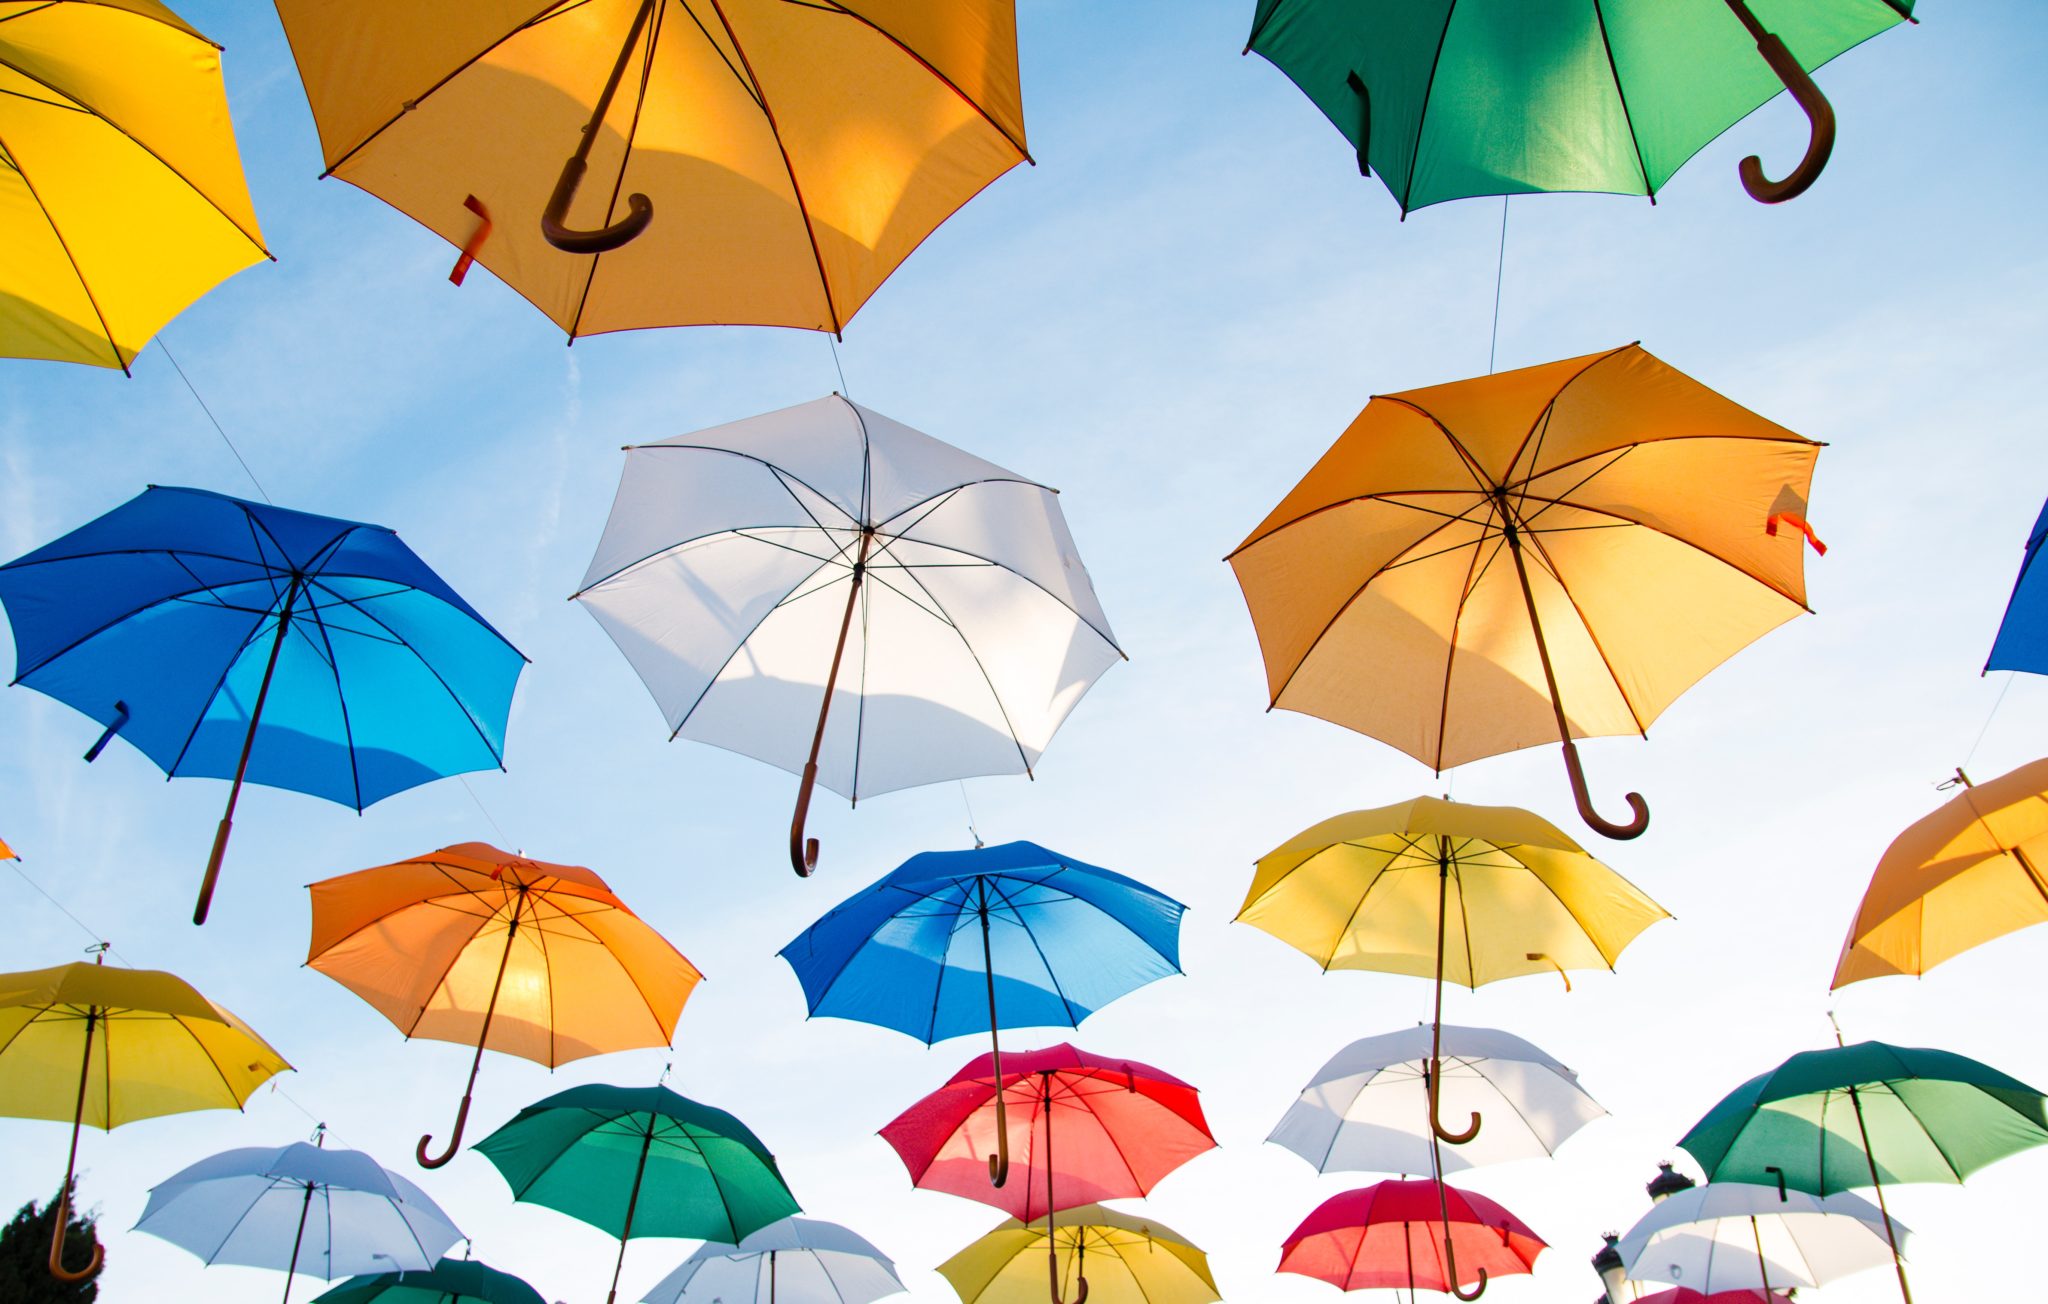 Regenschirm-Schutzschirm